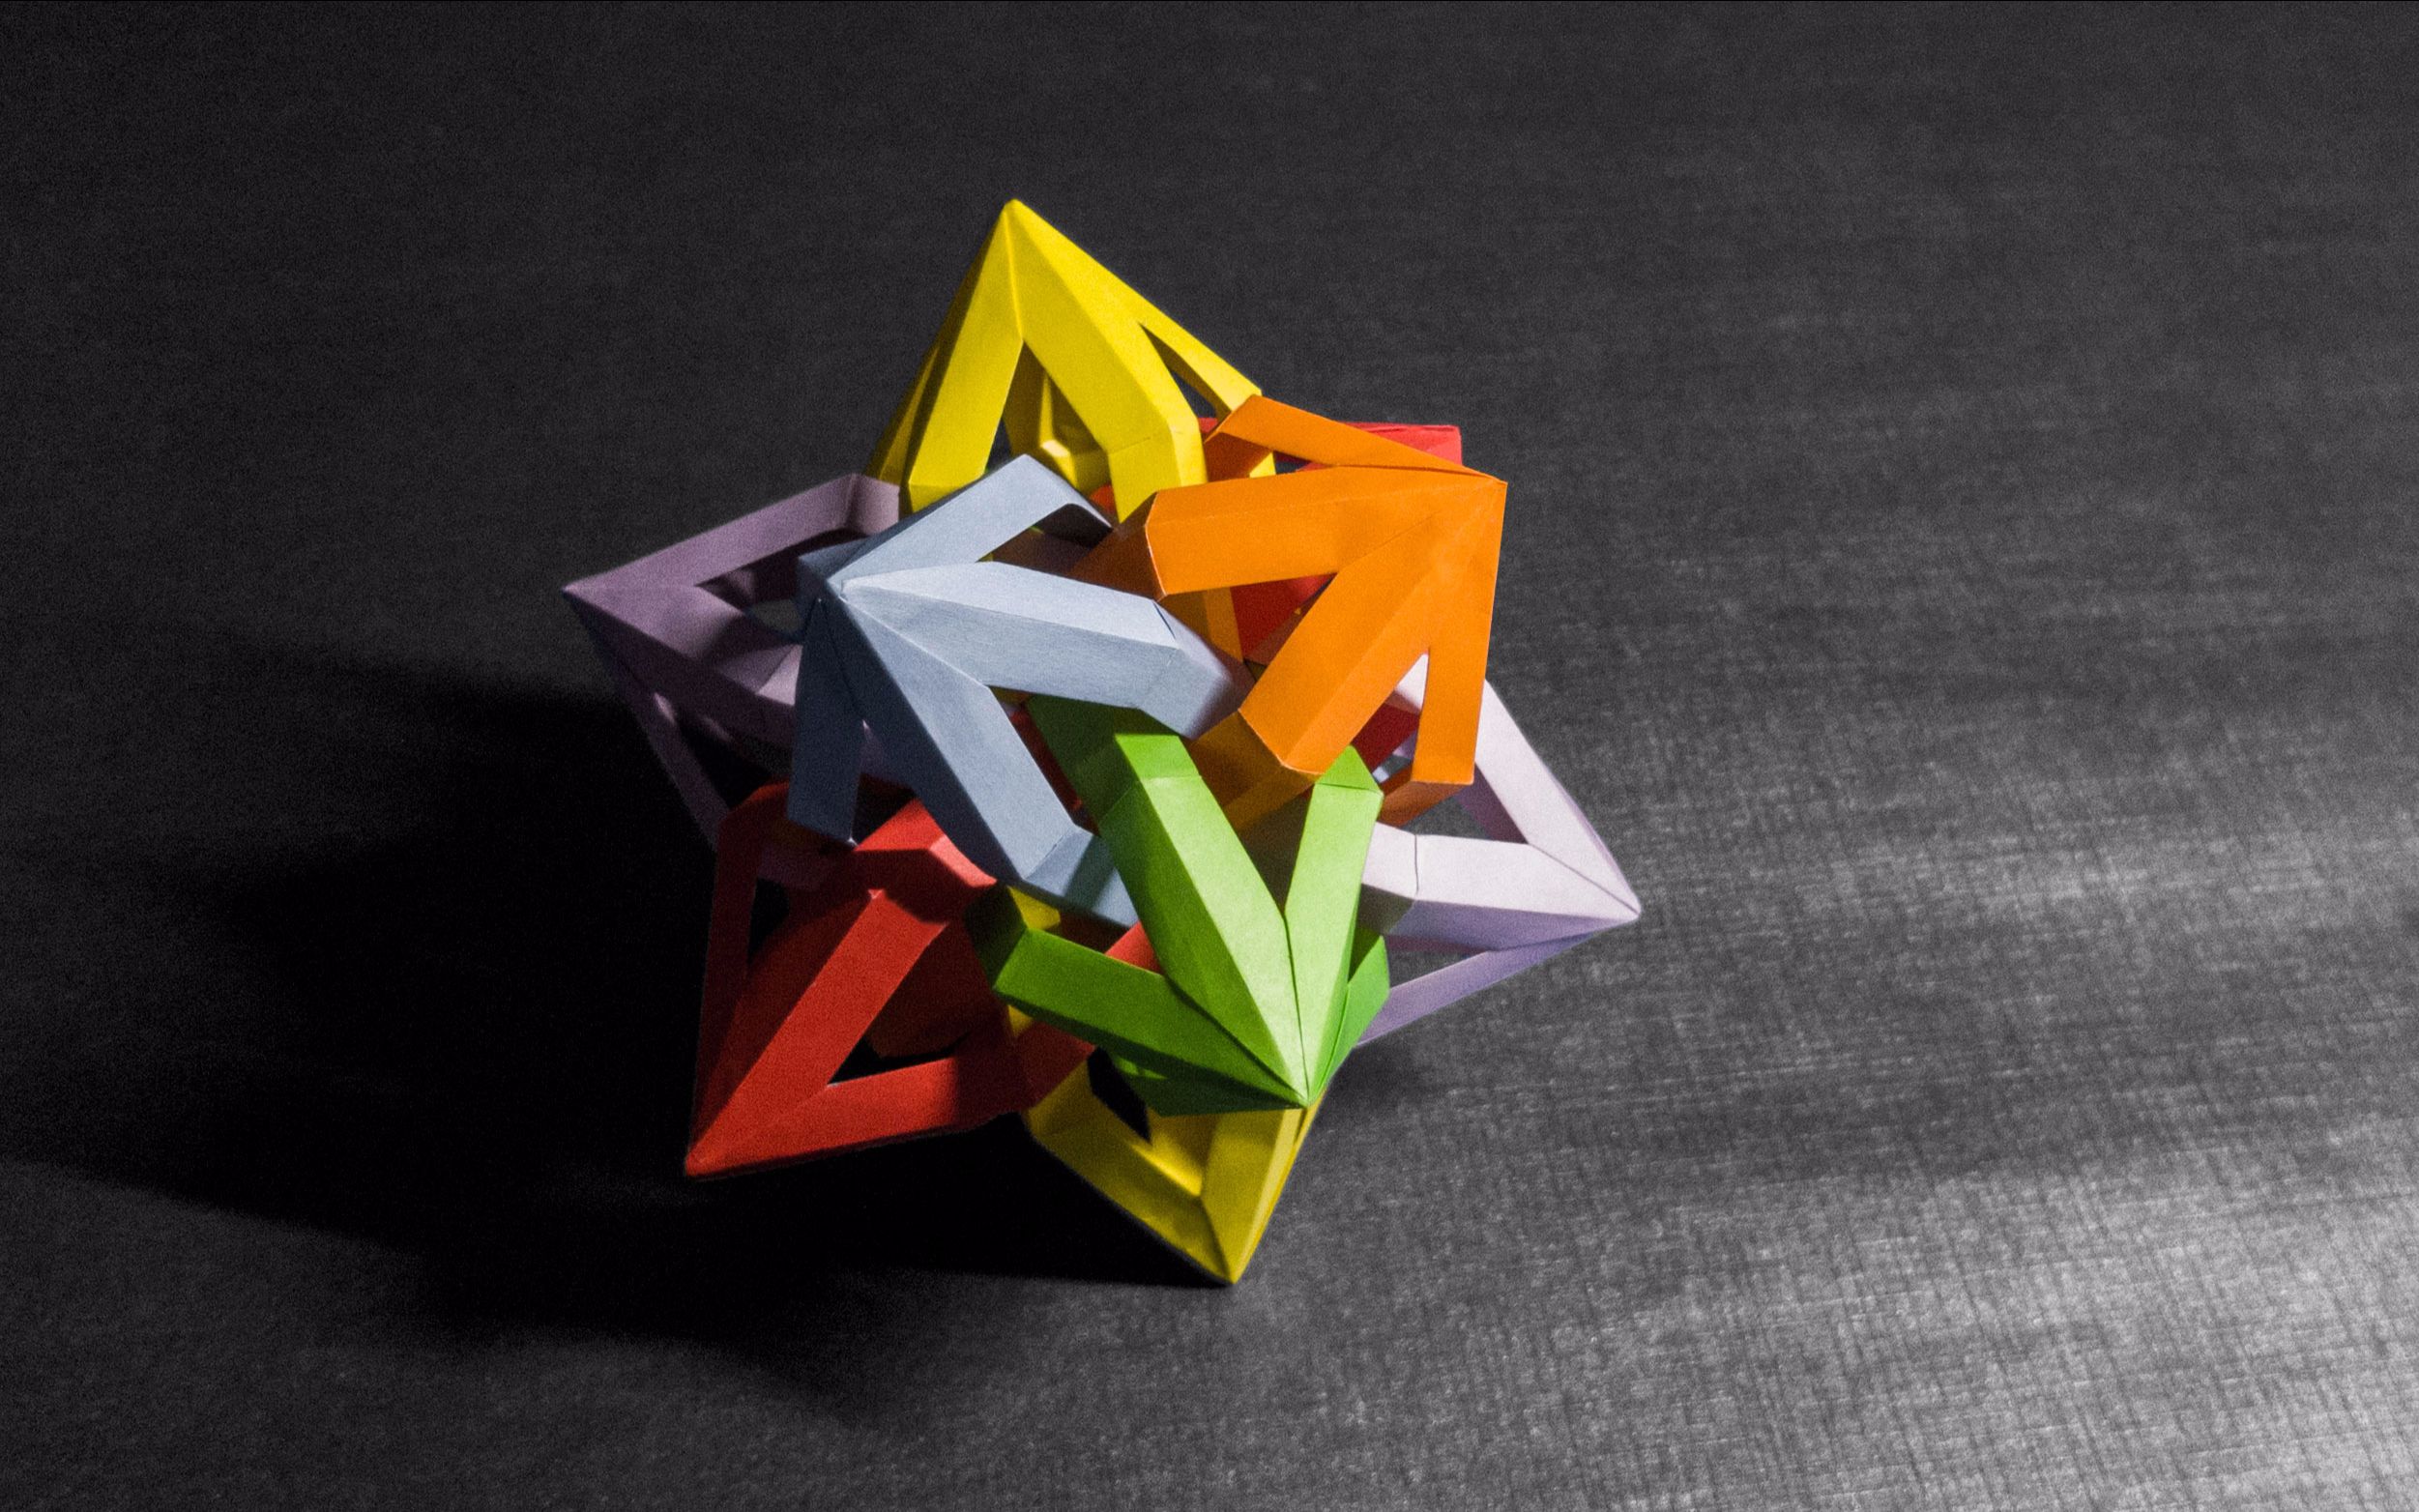 【折纸-教程】这款花球名为水晶星,这个up主的100期投稿竟然想折宝石